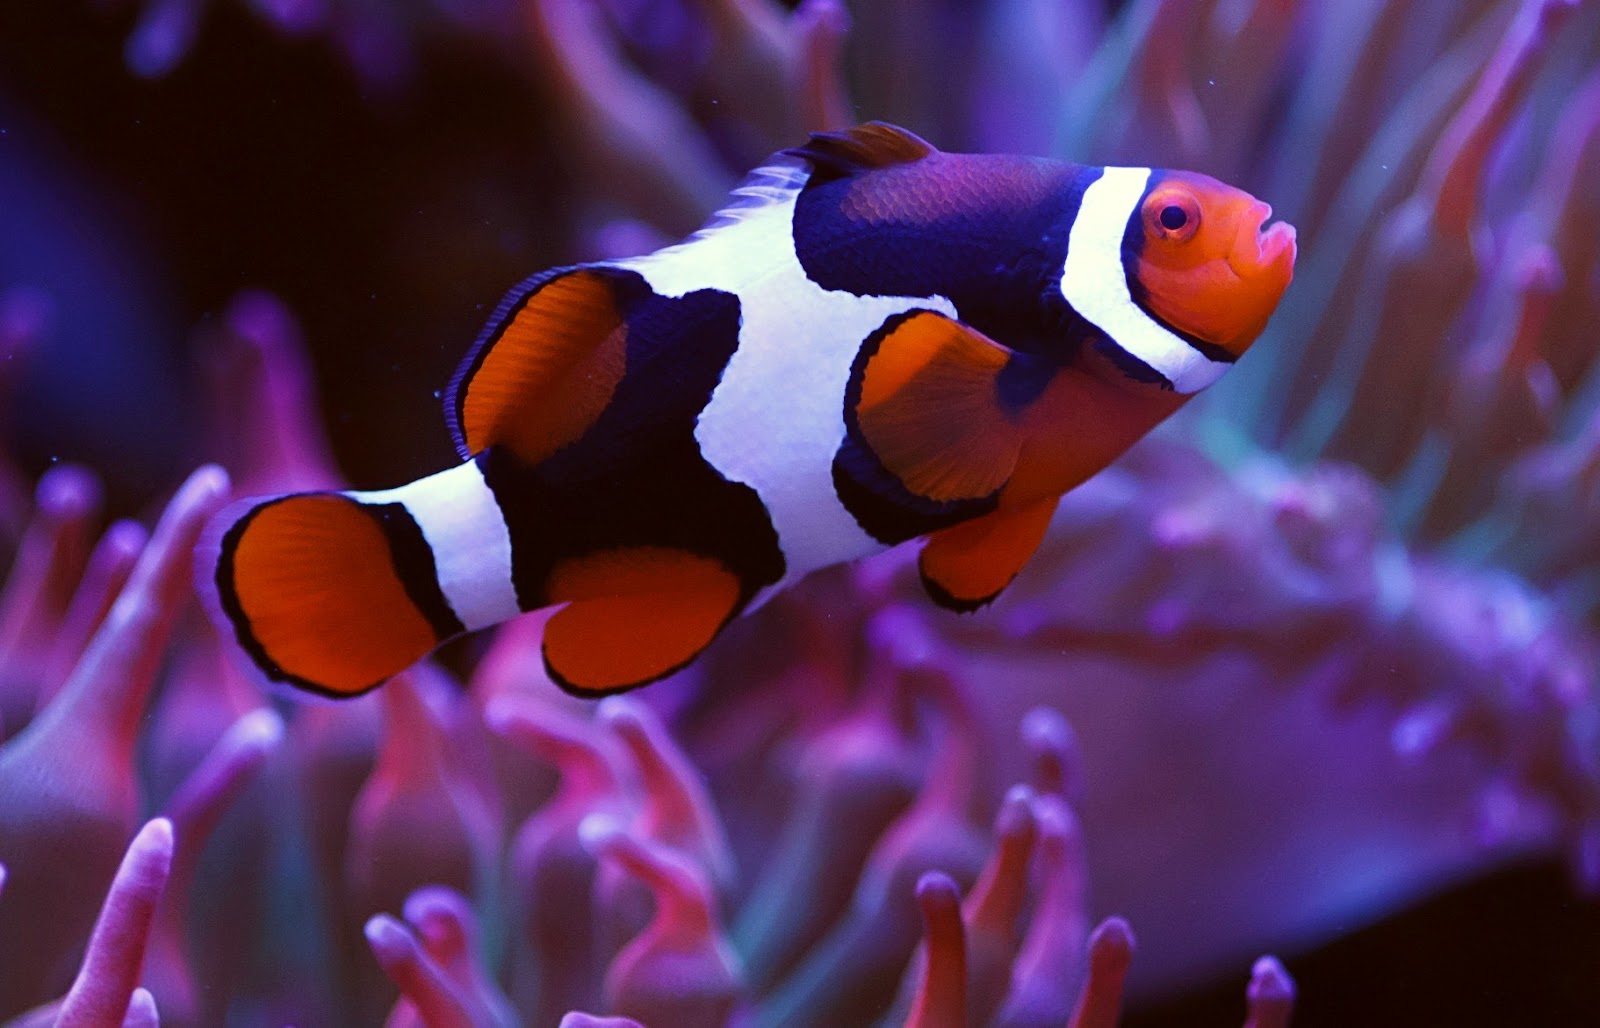 A clownfish swims in a tank.